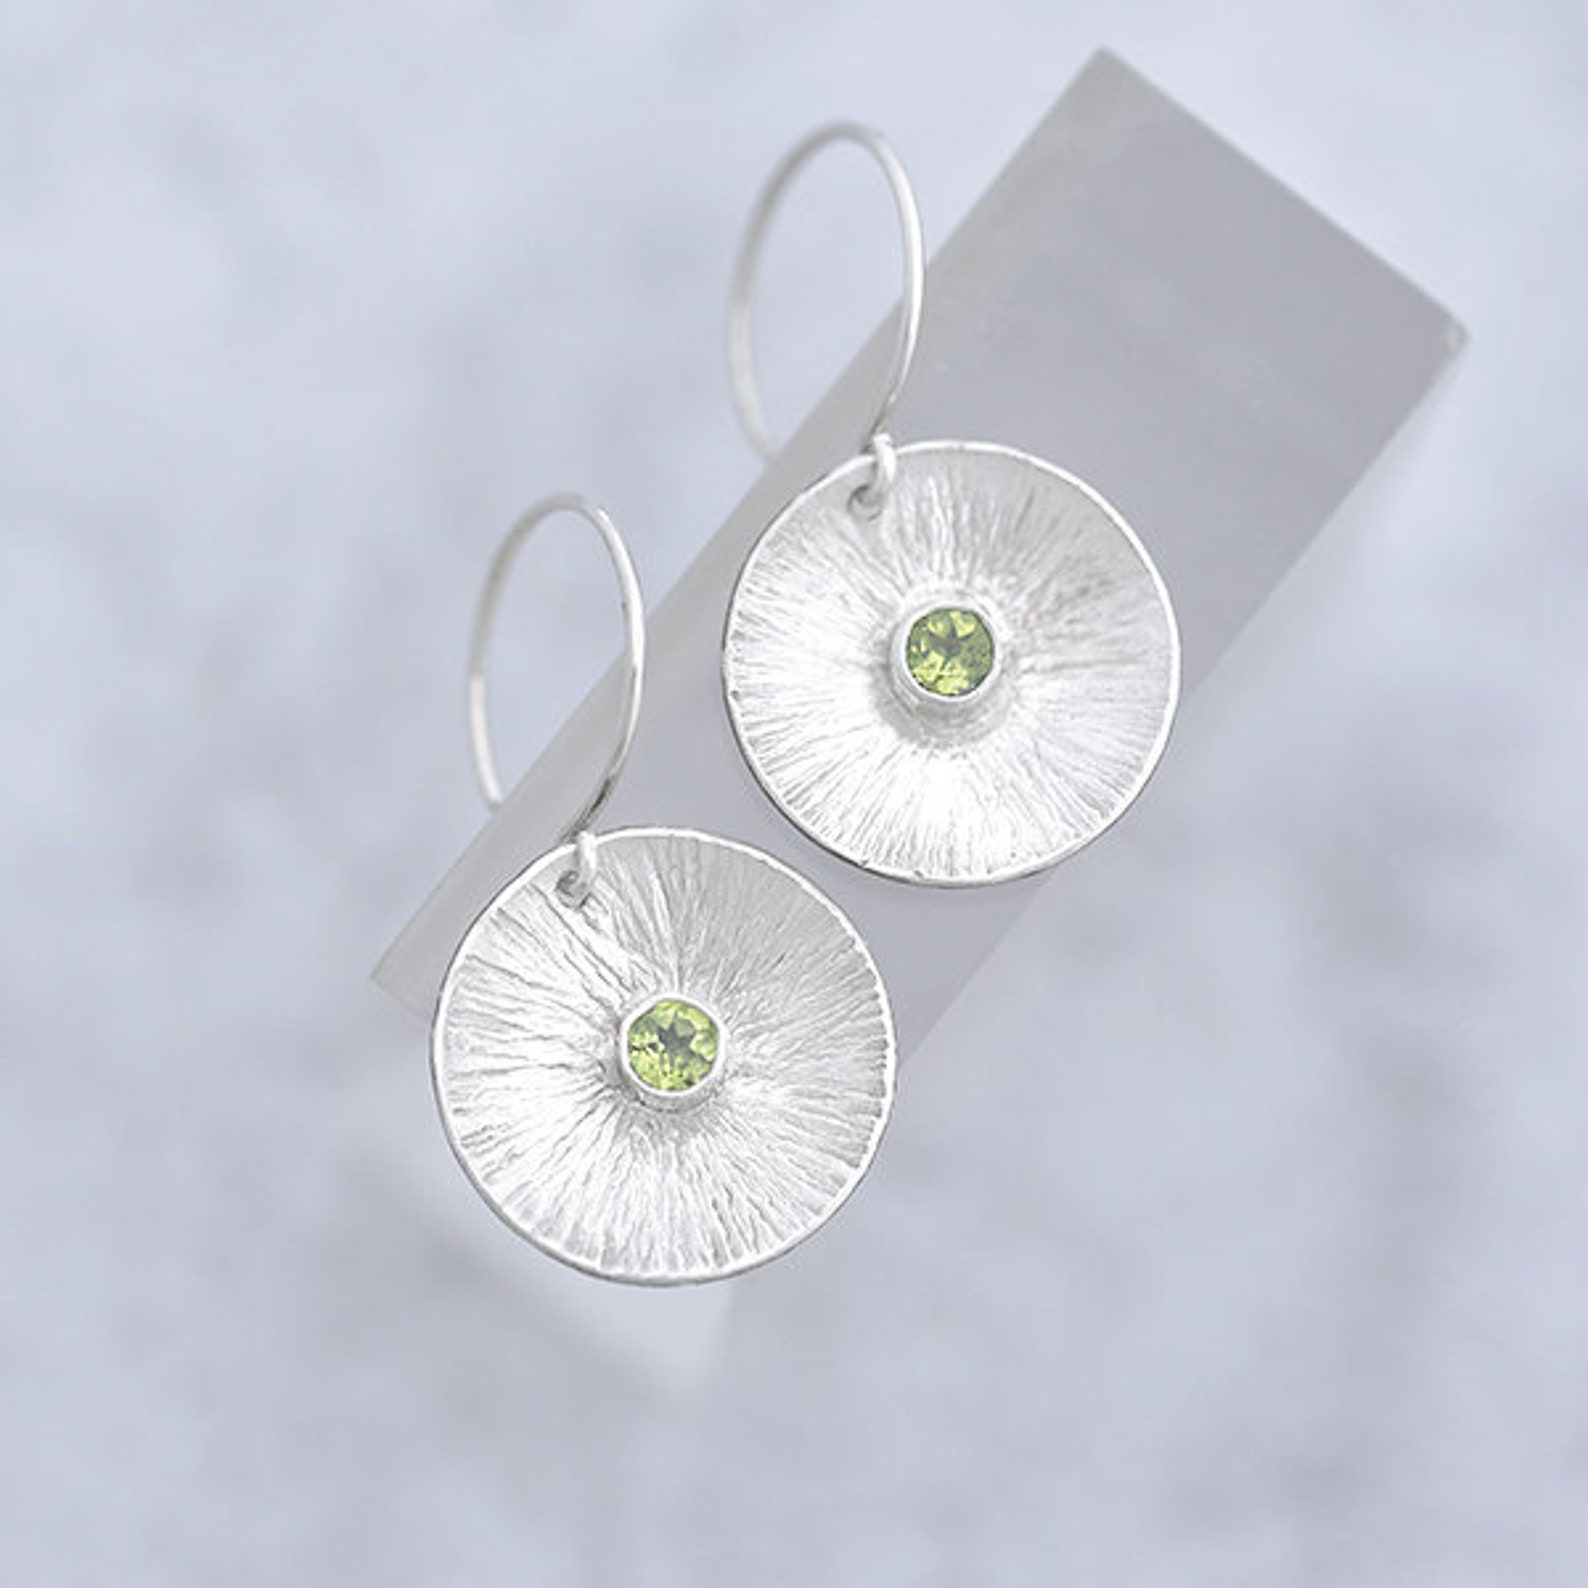 gemstone earrings - Peridot earrings